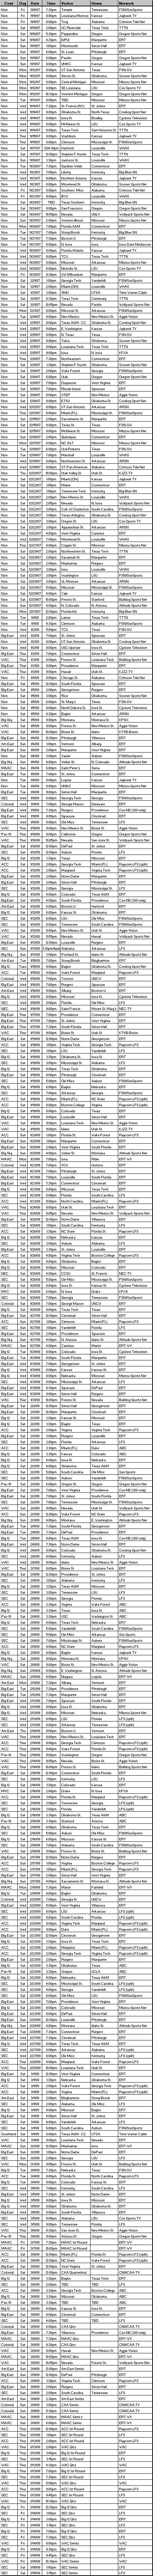 ESPN Full Court Schedule 07-08 v.6